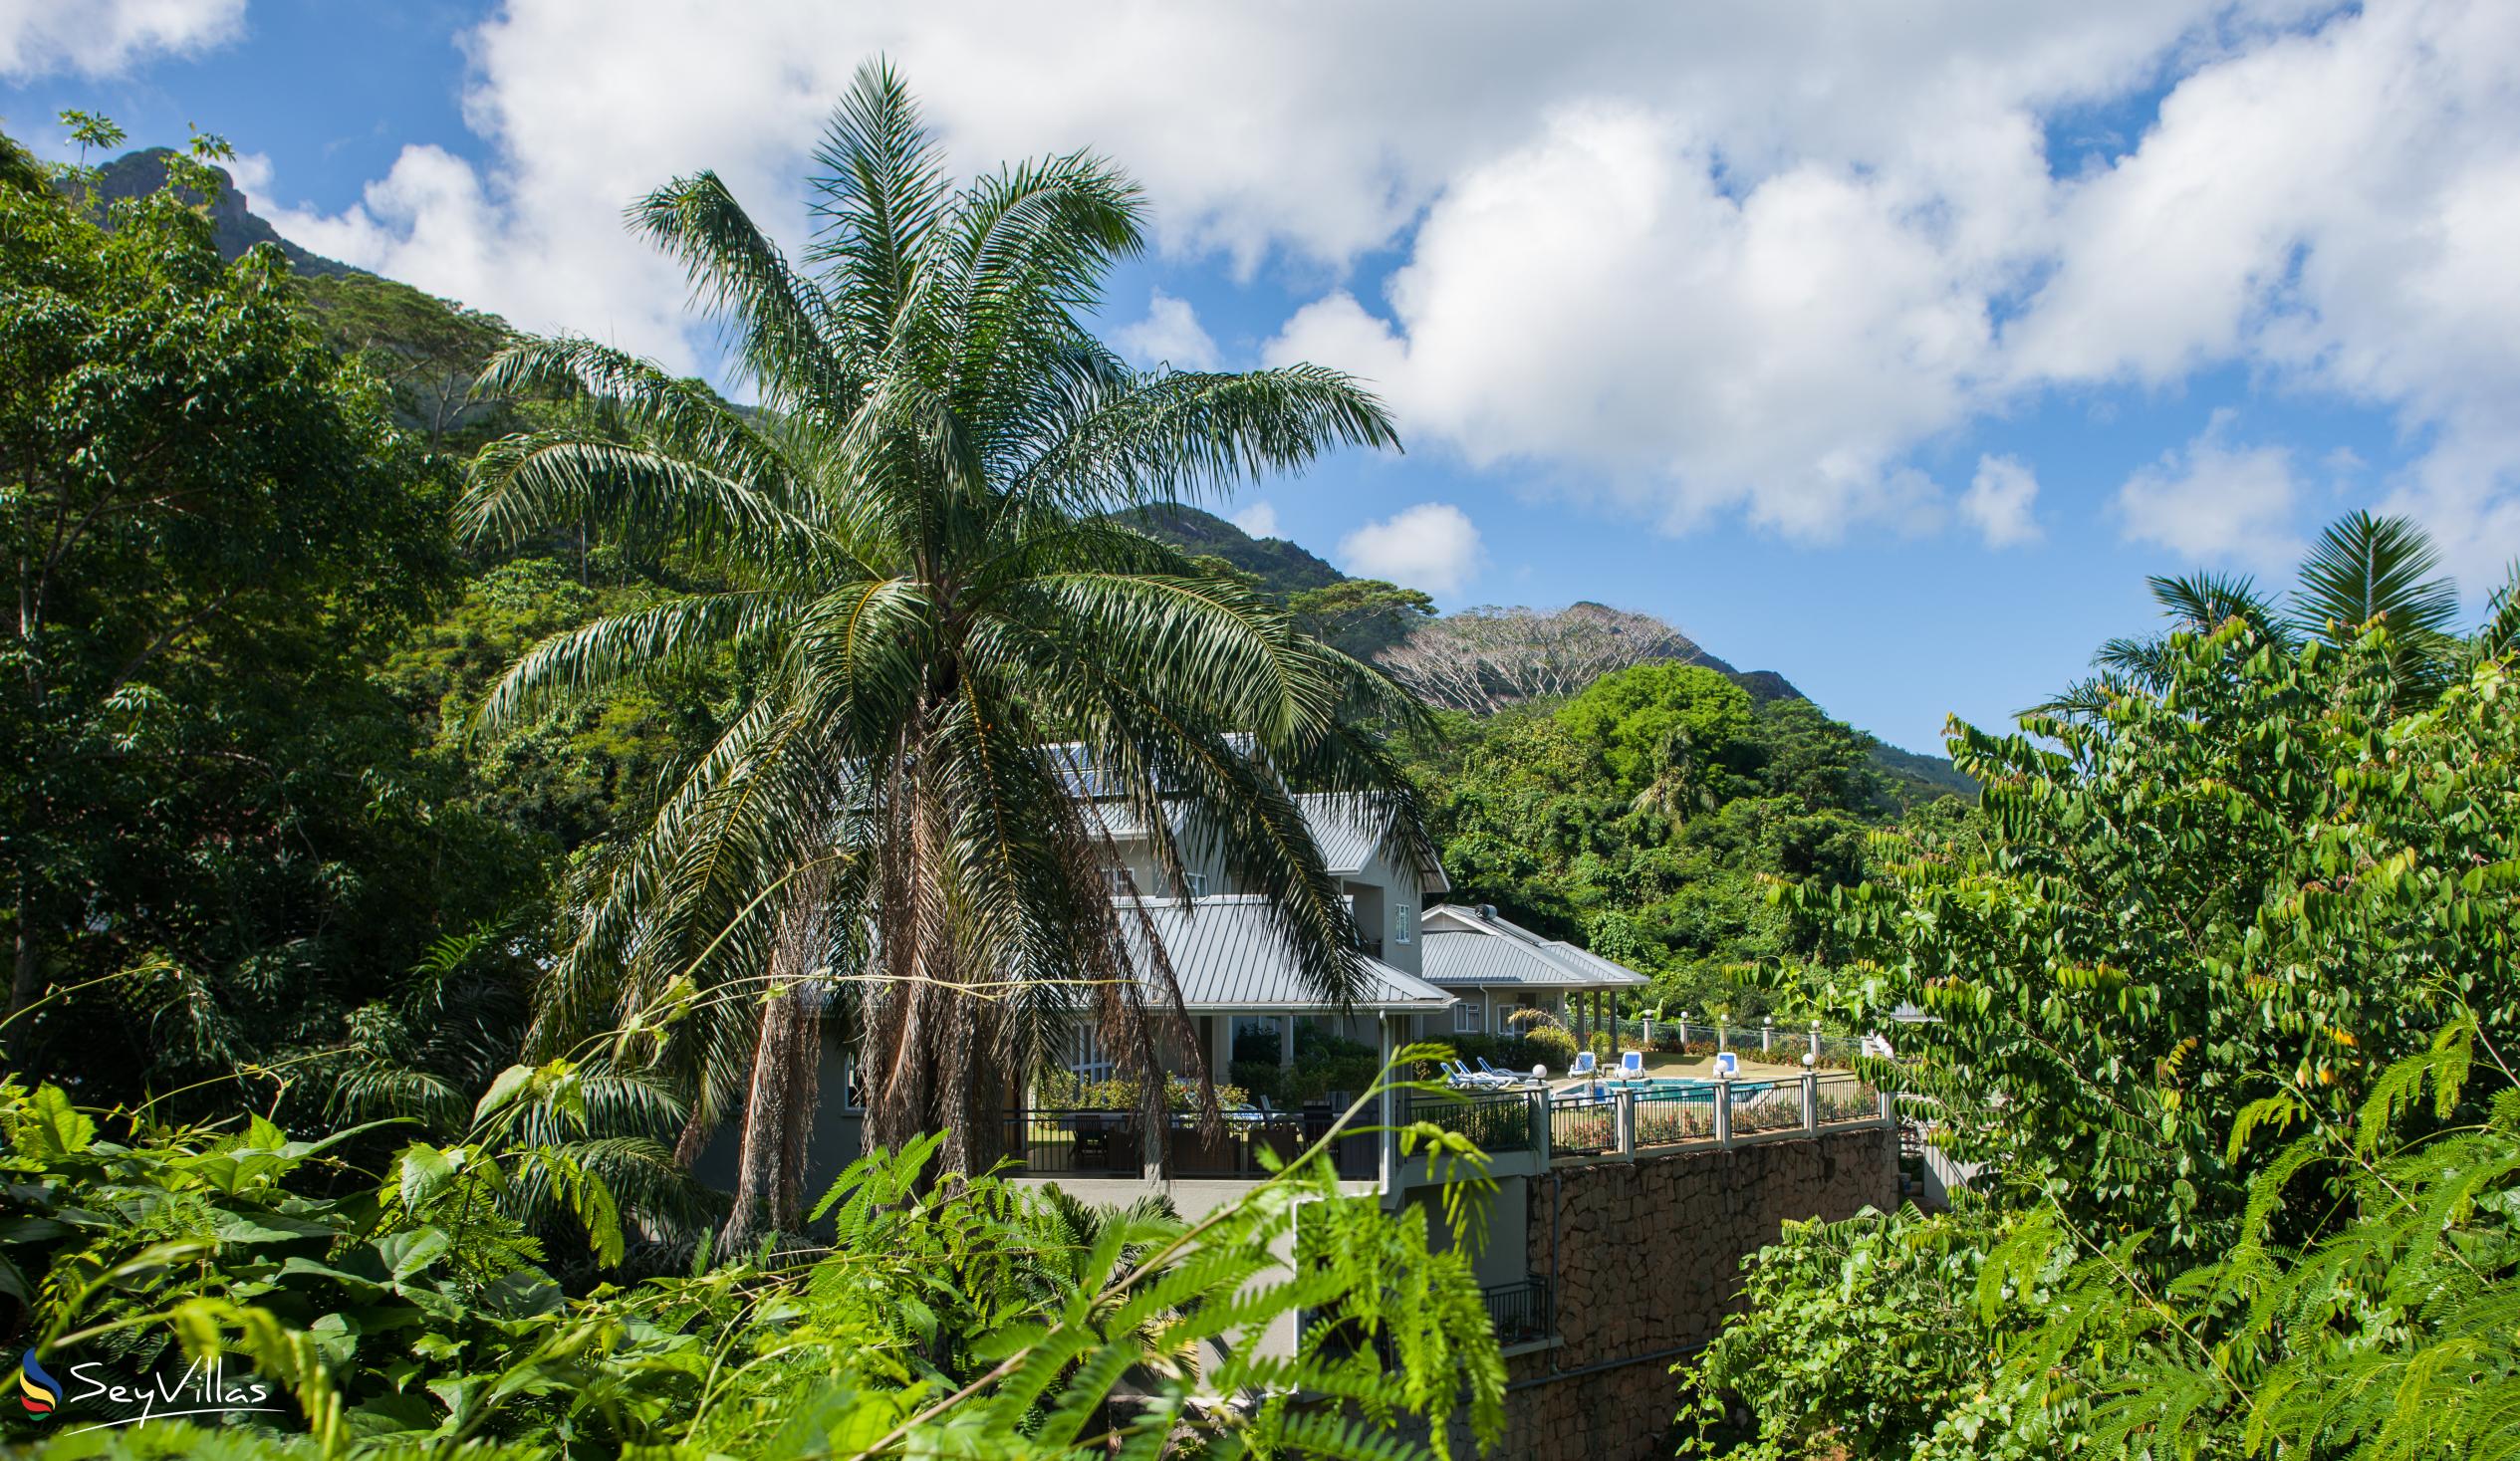 Foto 15: Bambous River Lodge - Aussenbereich - Mahé (Seychellen)